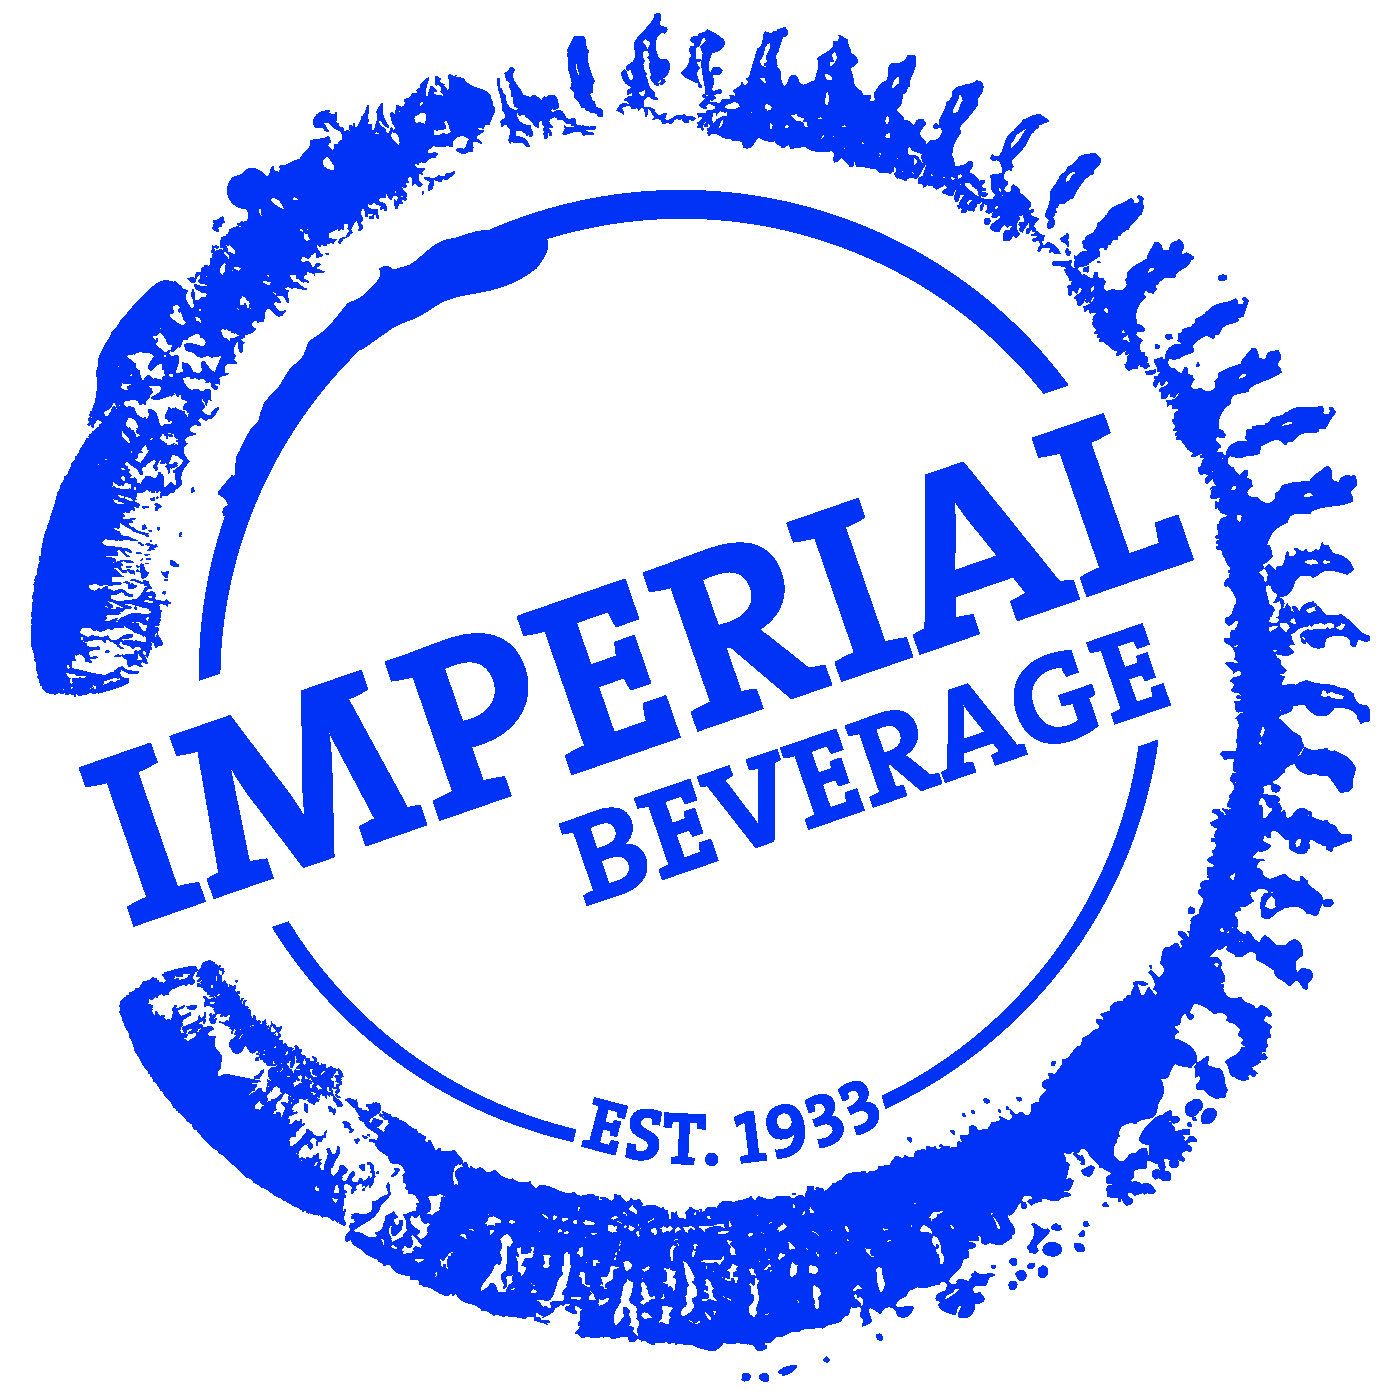 Imperial Beverage